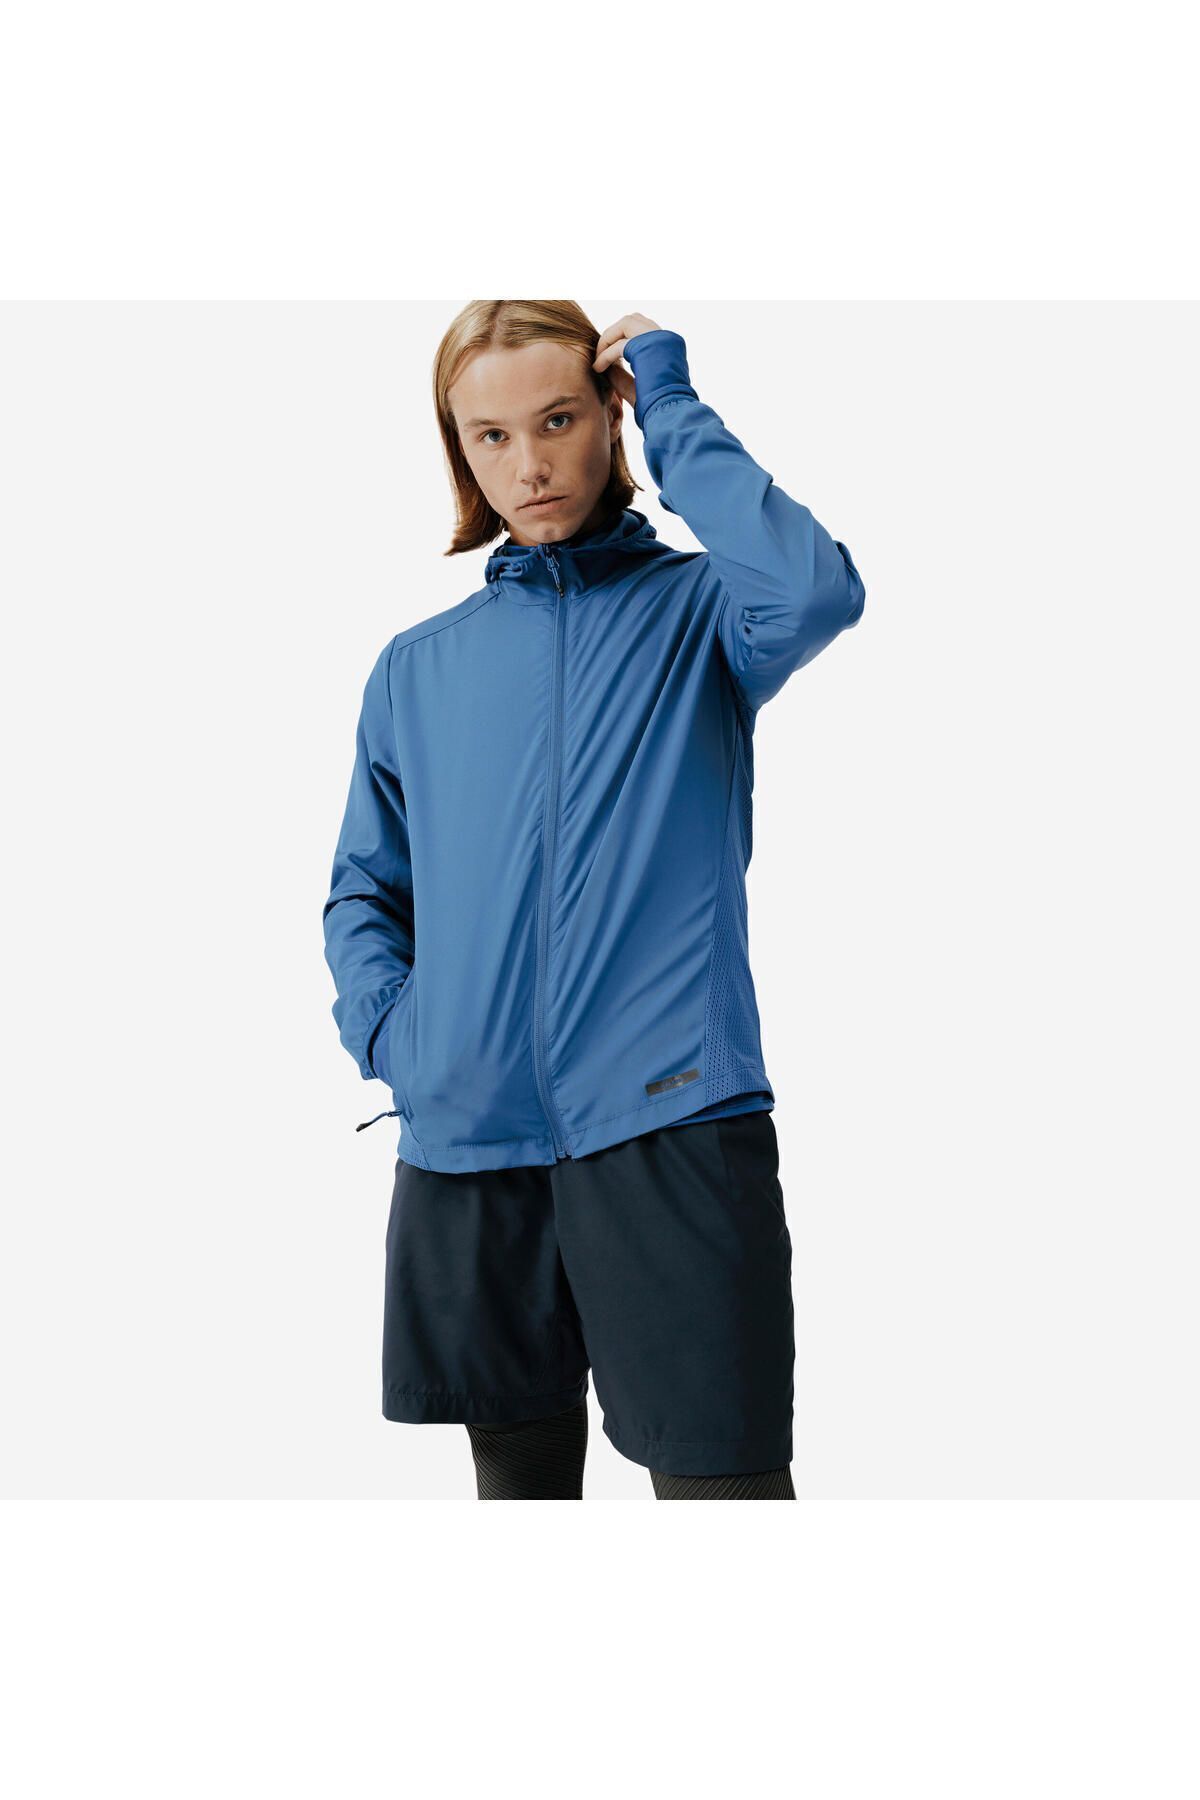 Decathlon Erkek Koşu Rüzgarlığı - Mavi - Run Wind